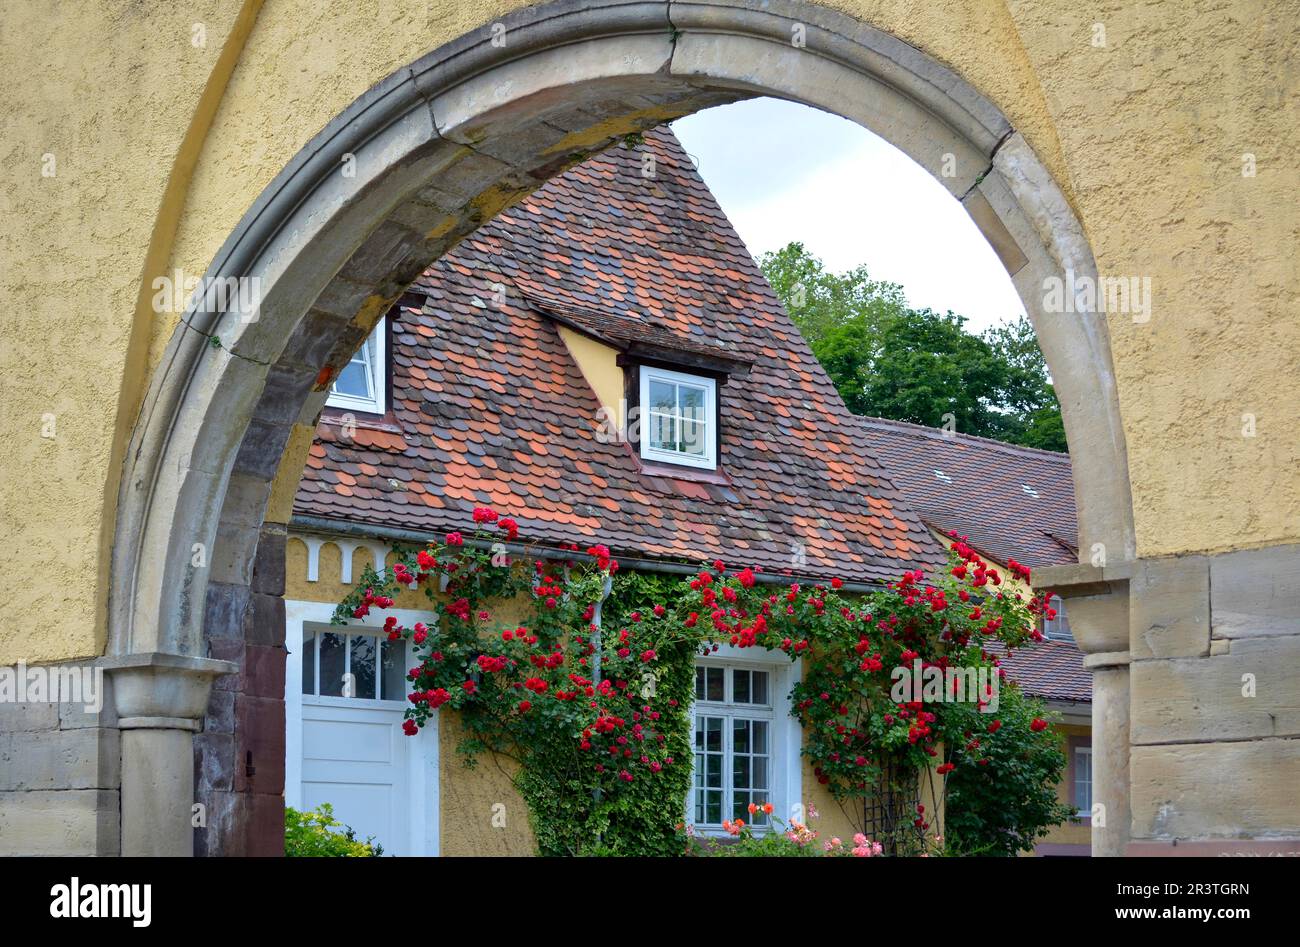 Rose rampicanti rosse sulla facciata della casa, posizione : Bauschlott arco rotondo ingresso al castello Foto Stock